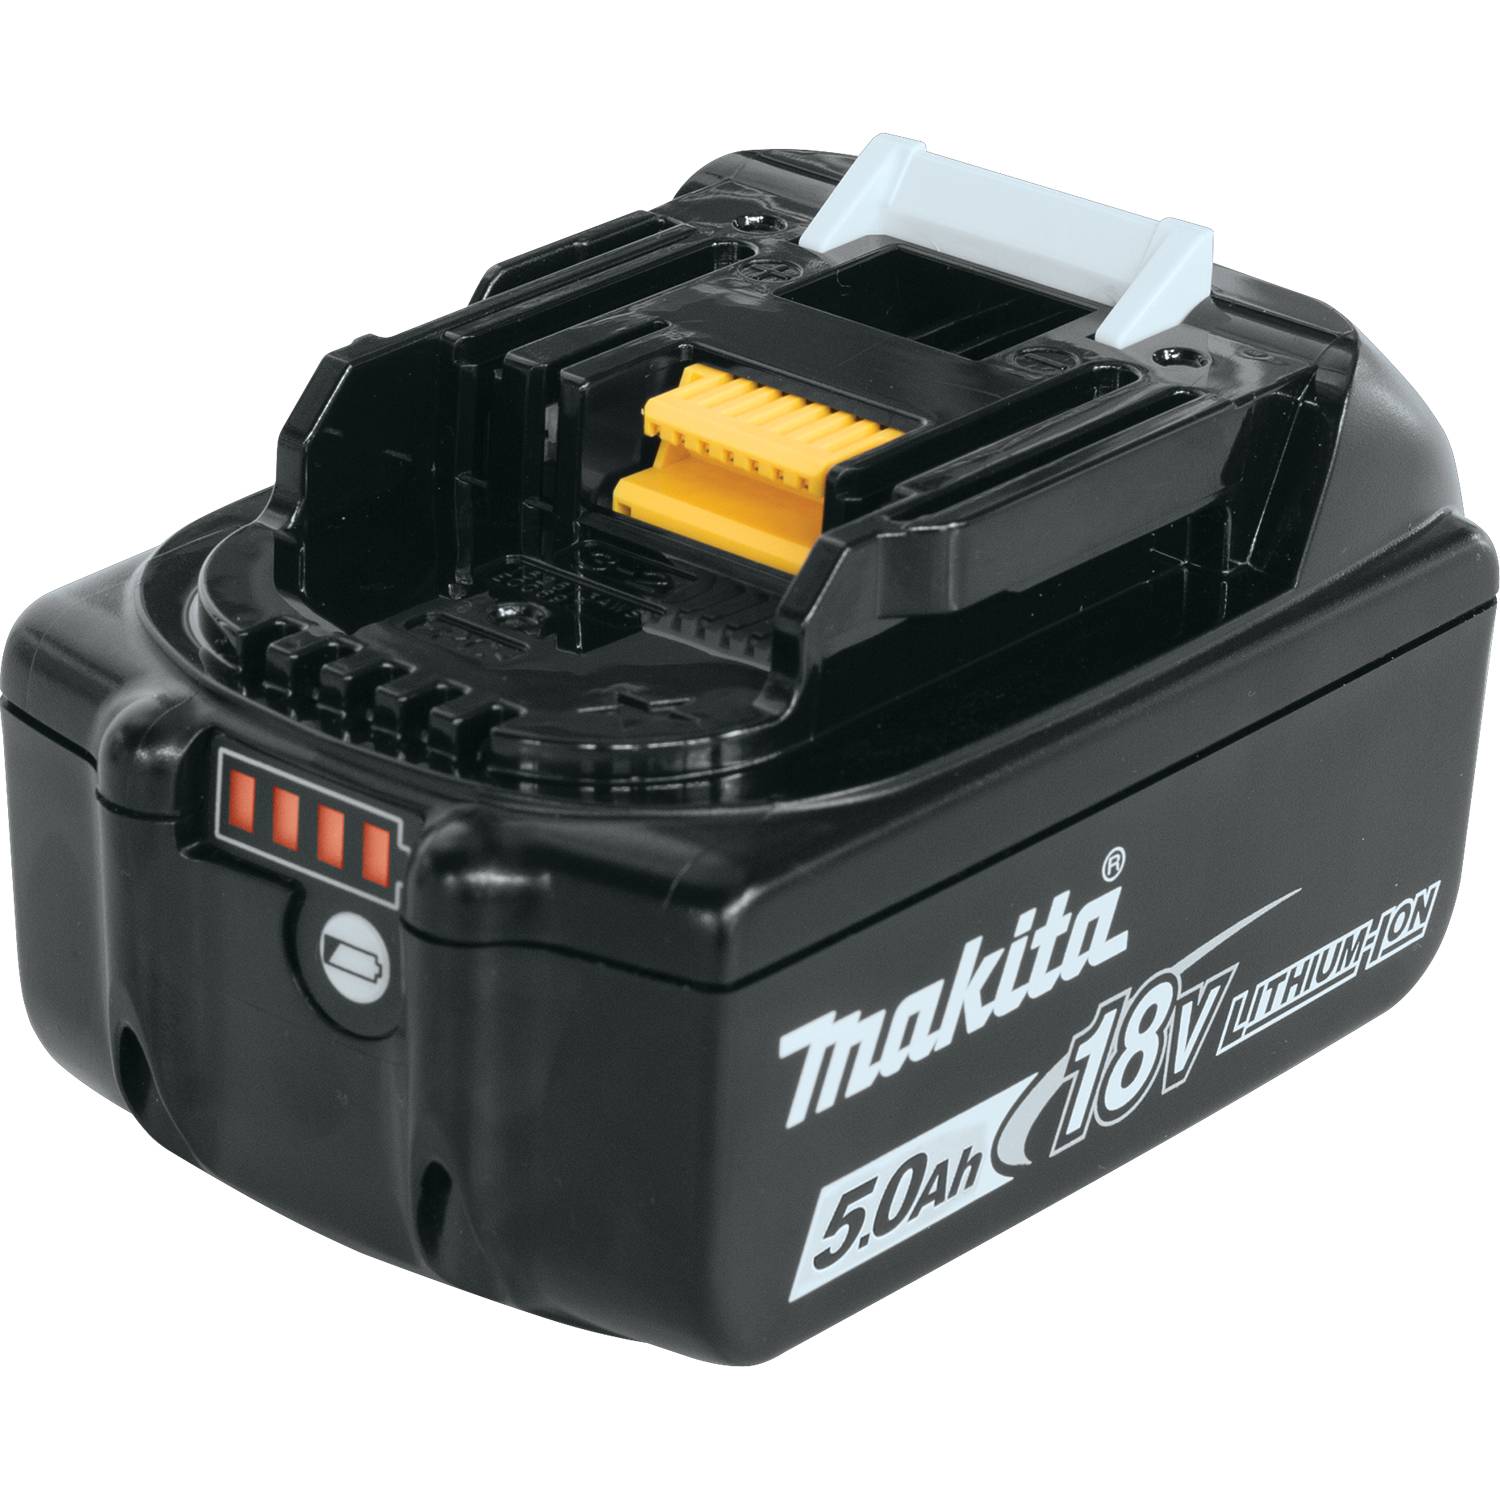 BL1850B-2 Makita Battery Pack, 18V 5.0AH 3